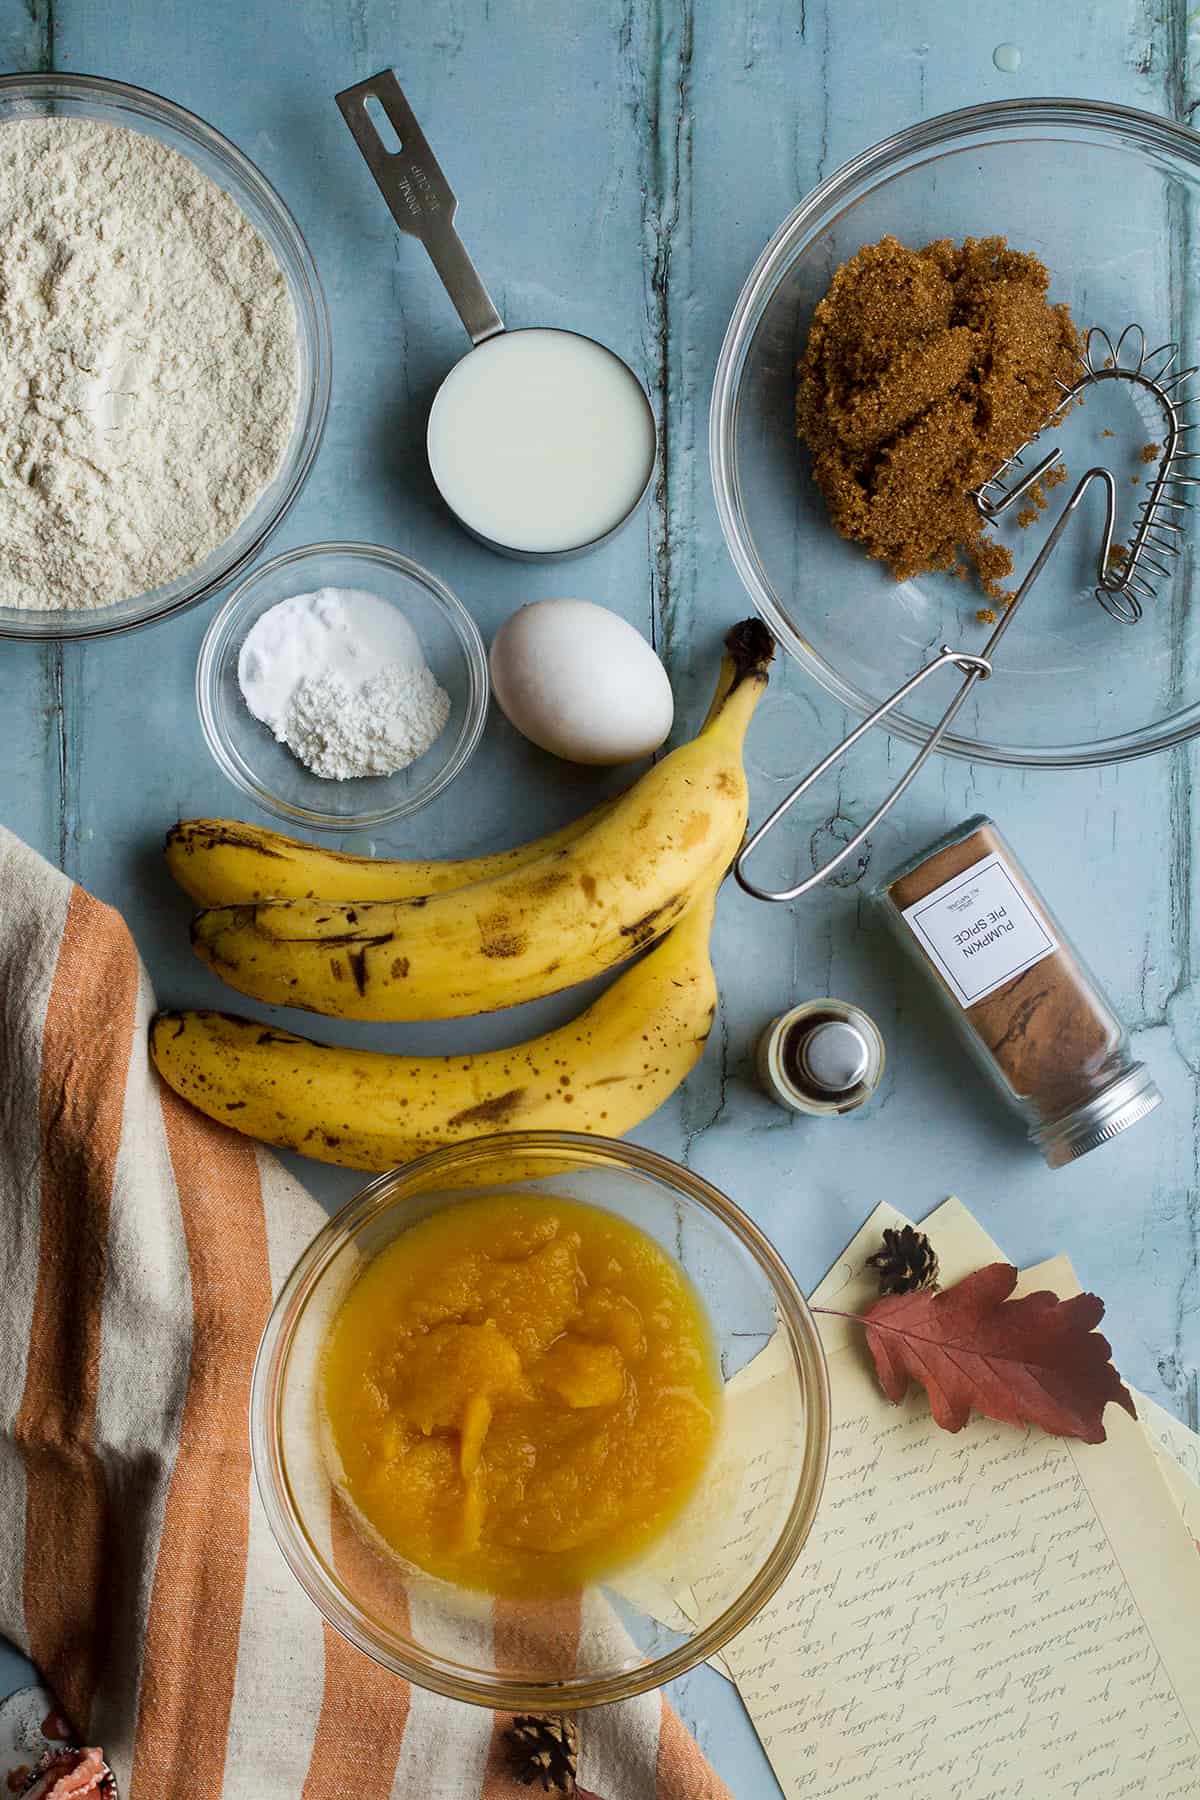 Ingredients to make pumpkin banana muffins.